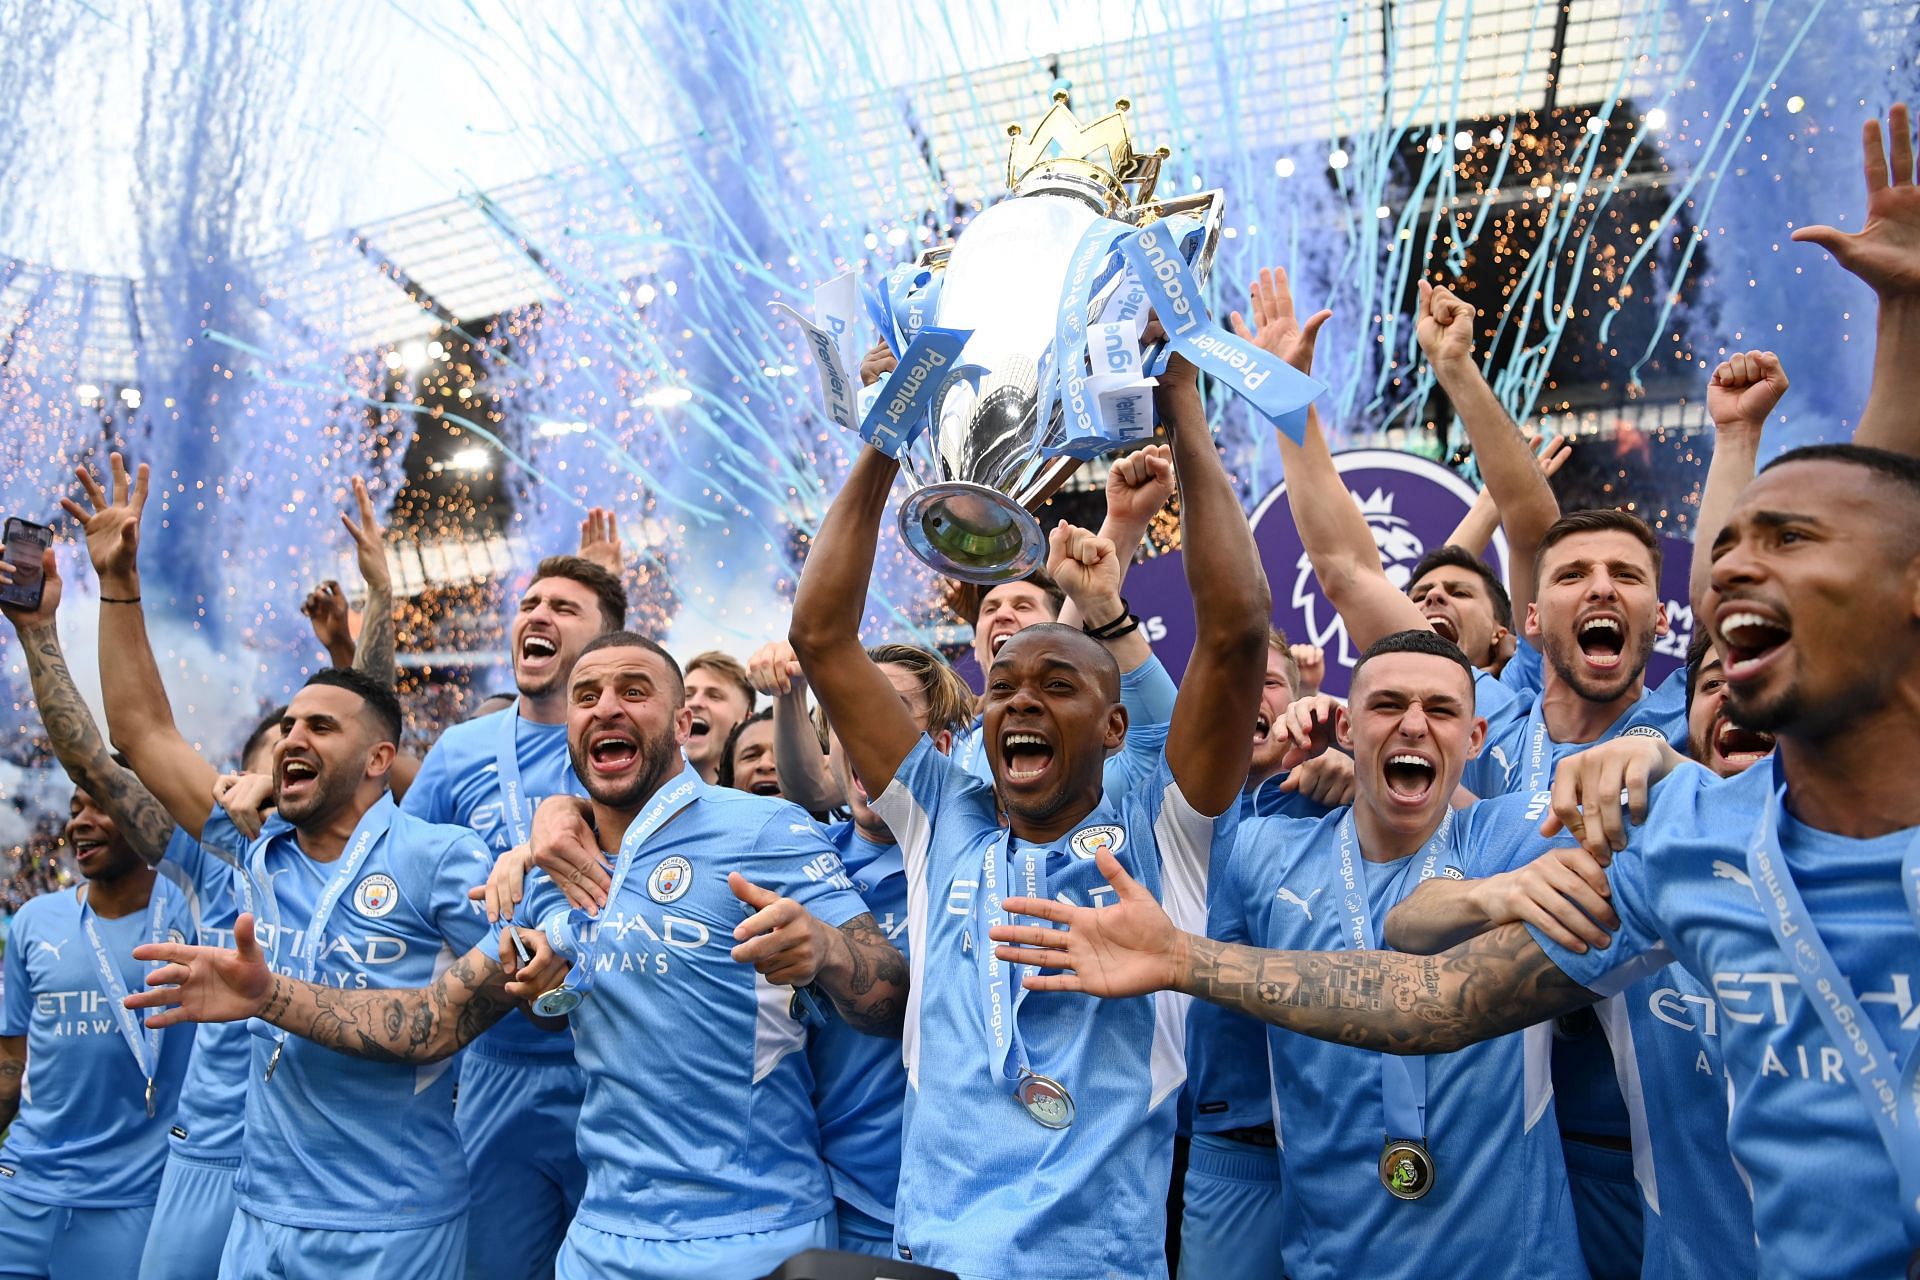 City have won four of the last five Premier League titles